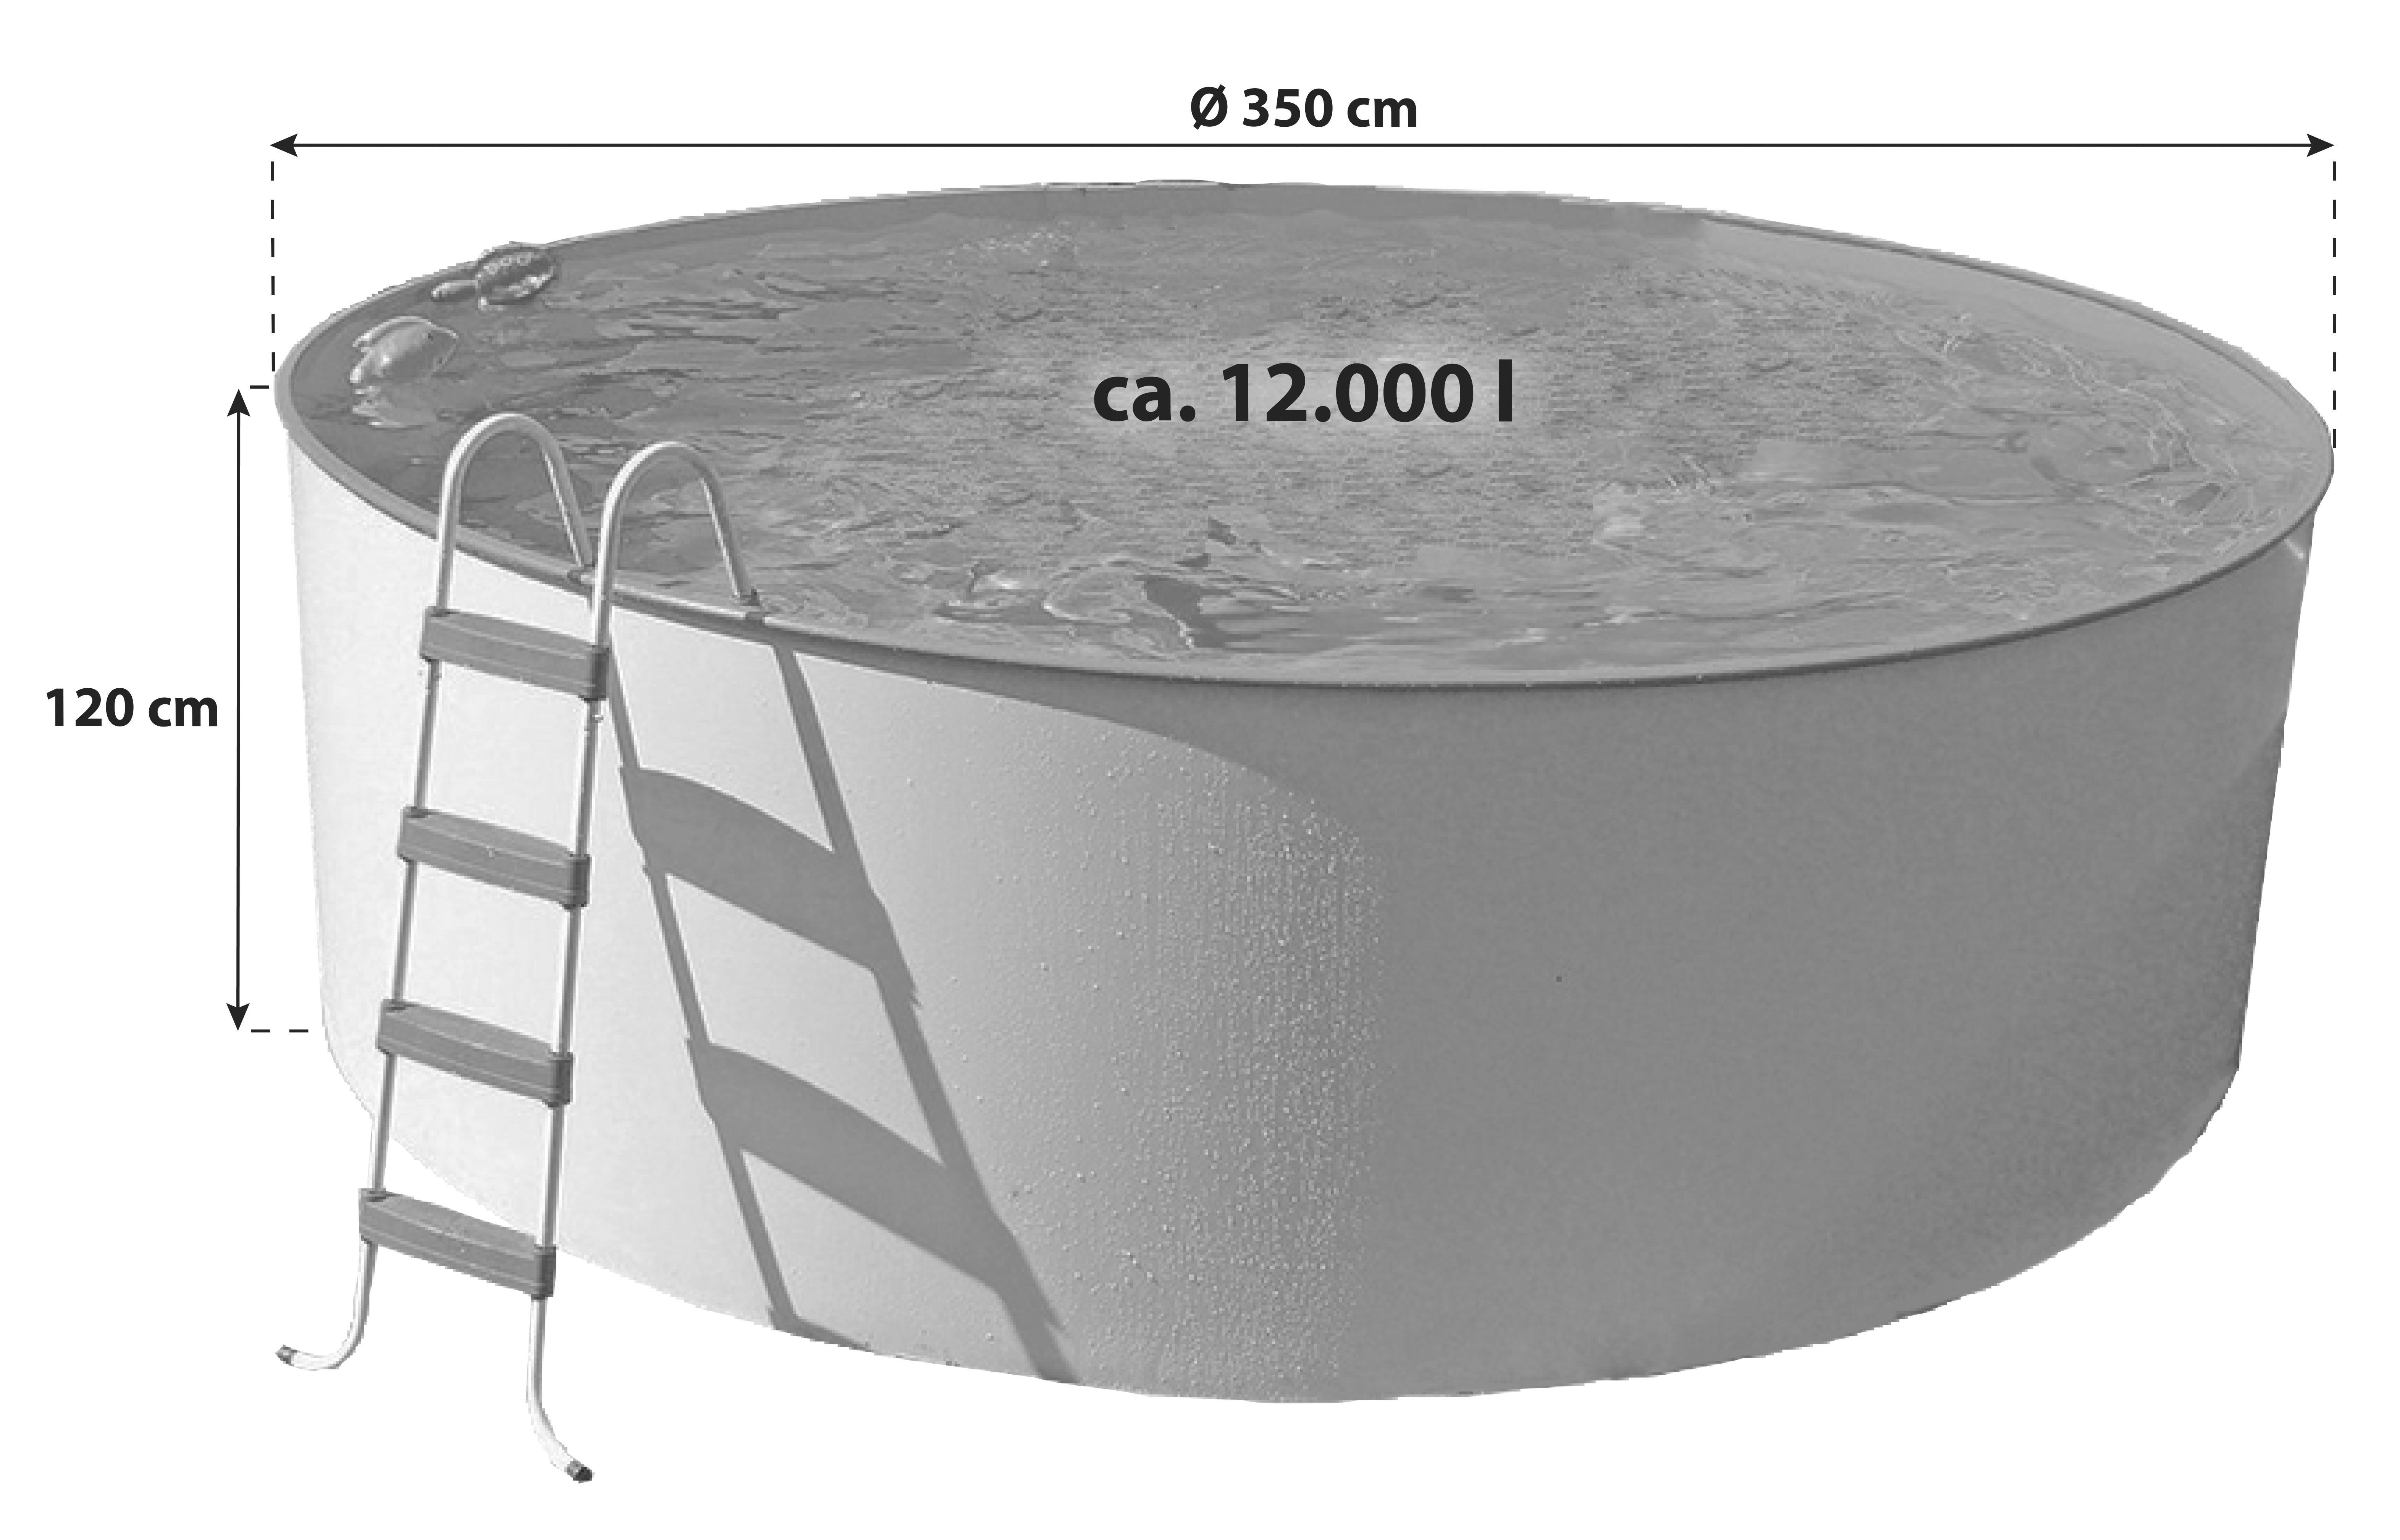 Stahlwandpool Rund Steely M mit Leiter Ø 350 cm - Weiß, MODERN, Metall (350cm)